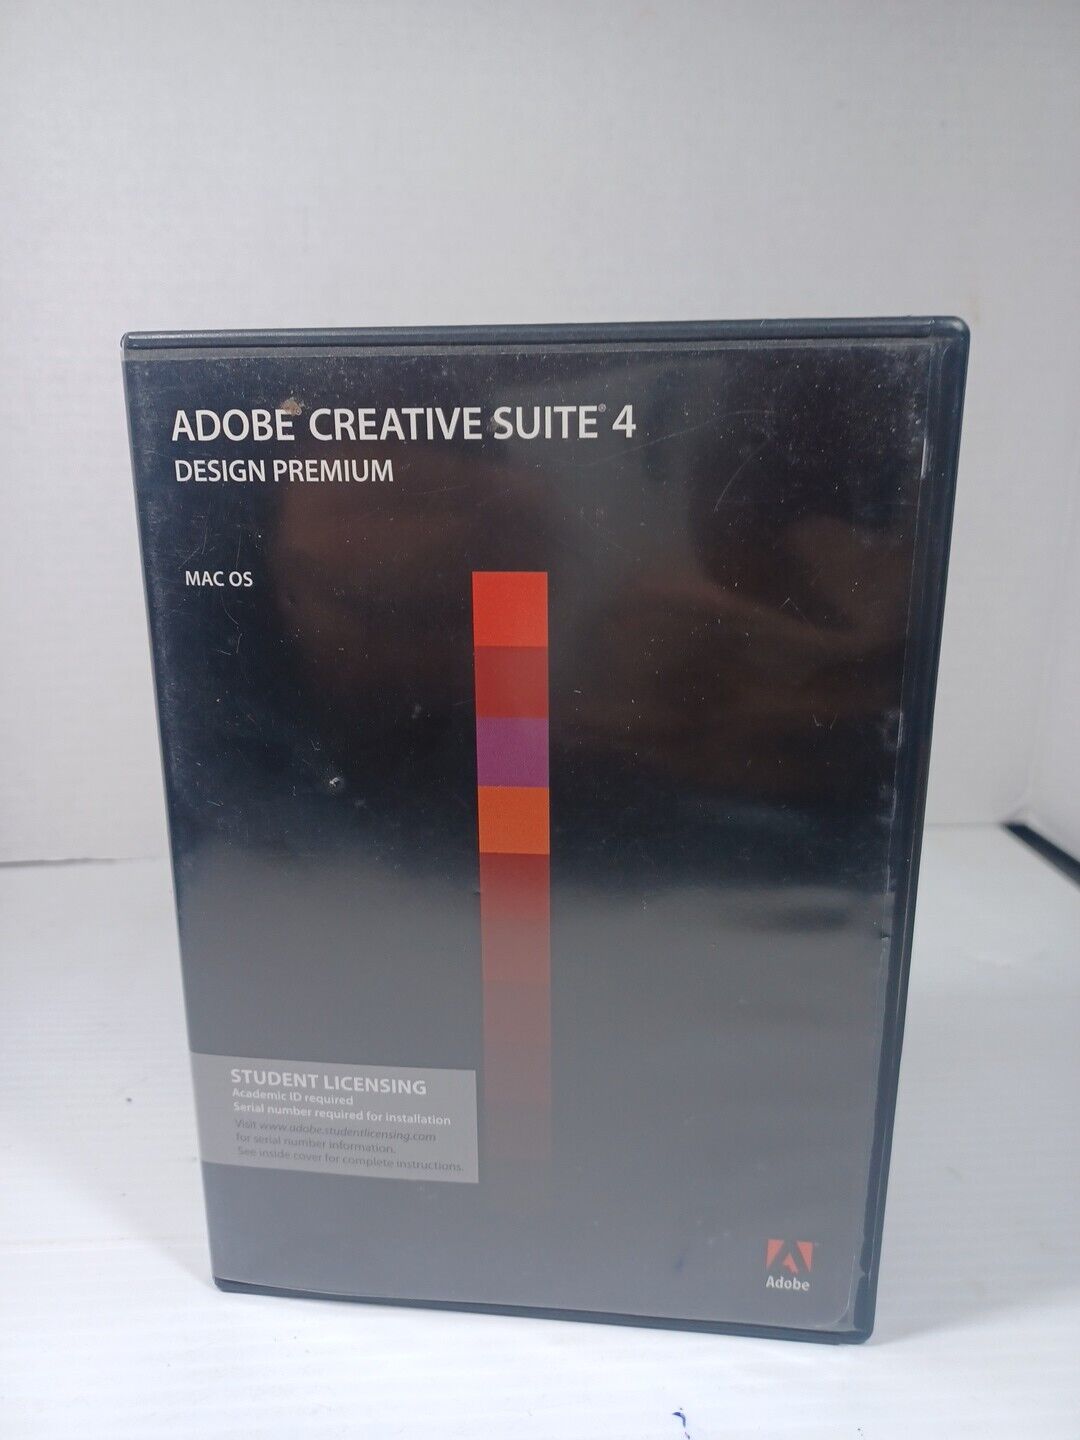 Adobe Creative Suite 4 Design Premium MacOS Student Licensing Needs Academic ID 